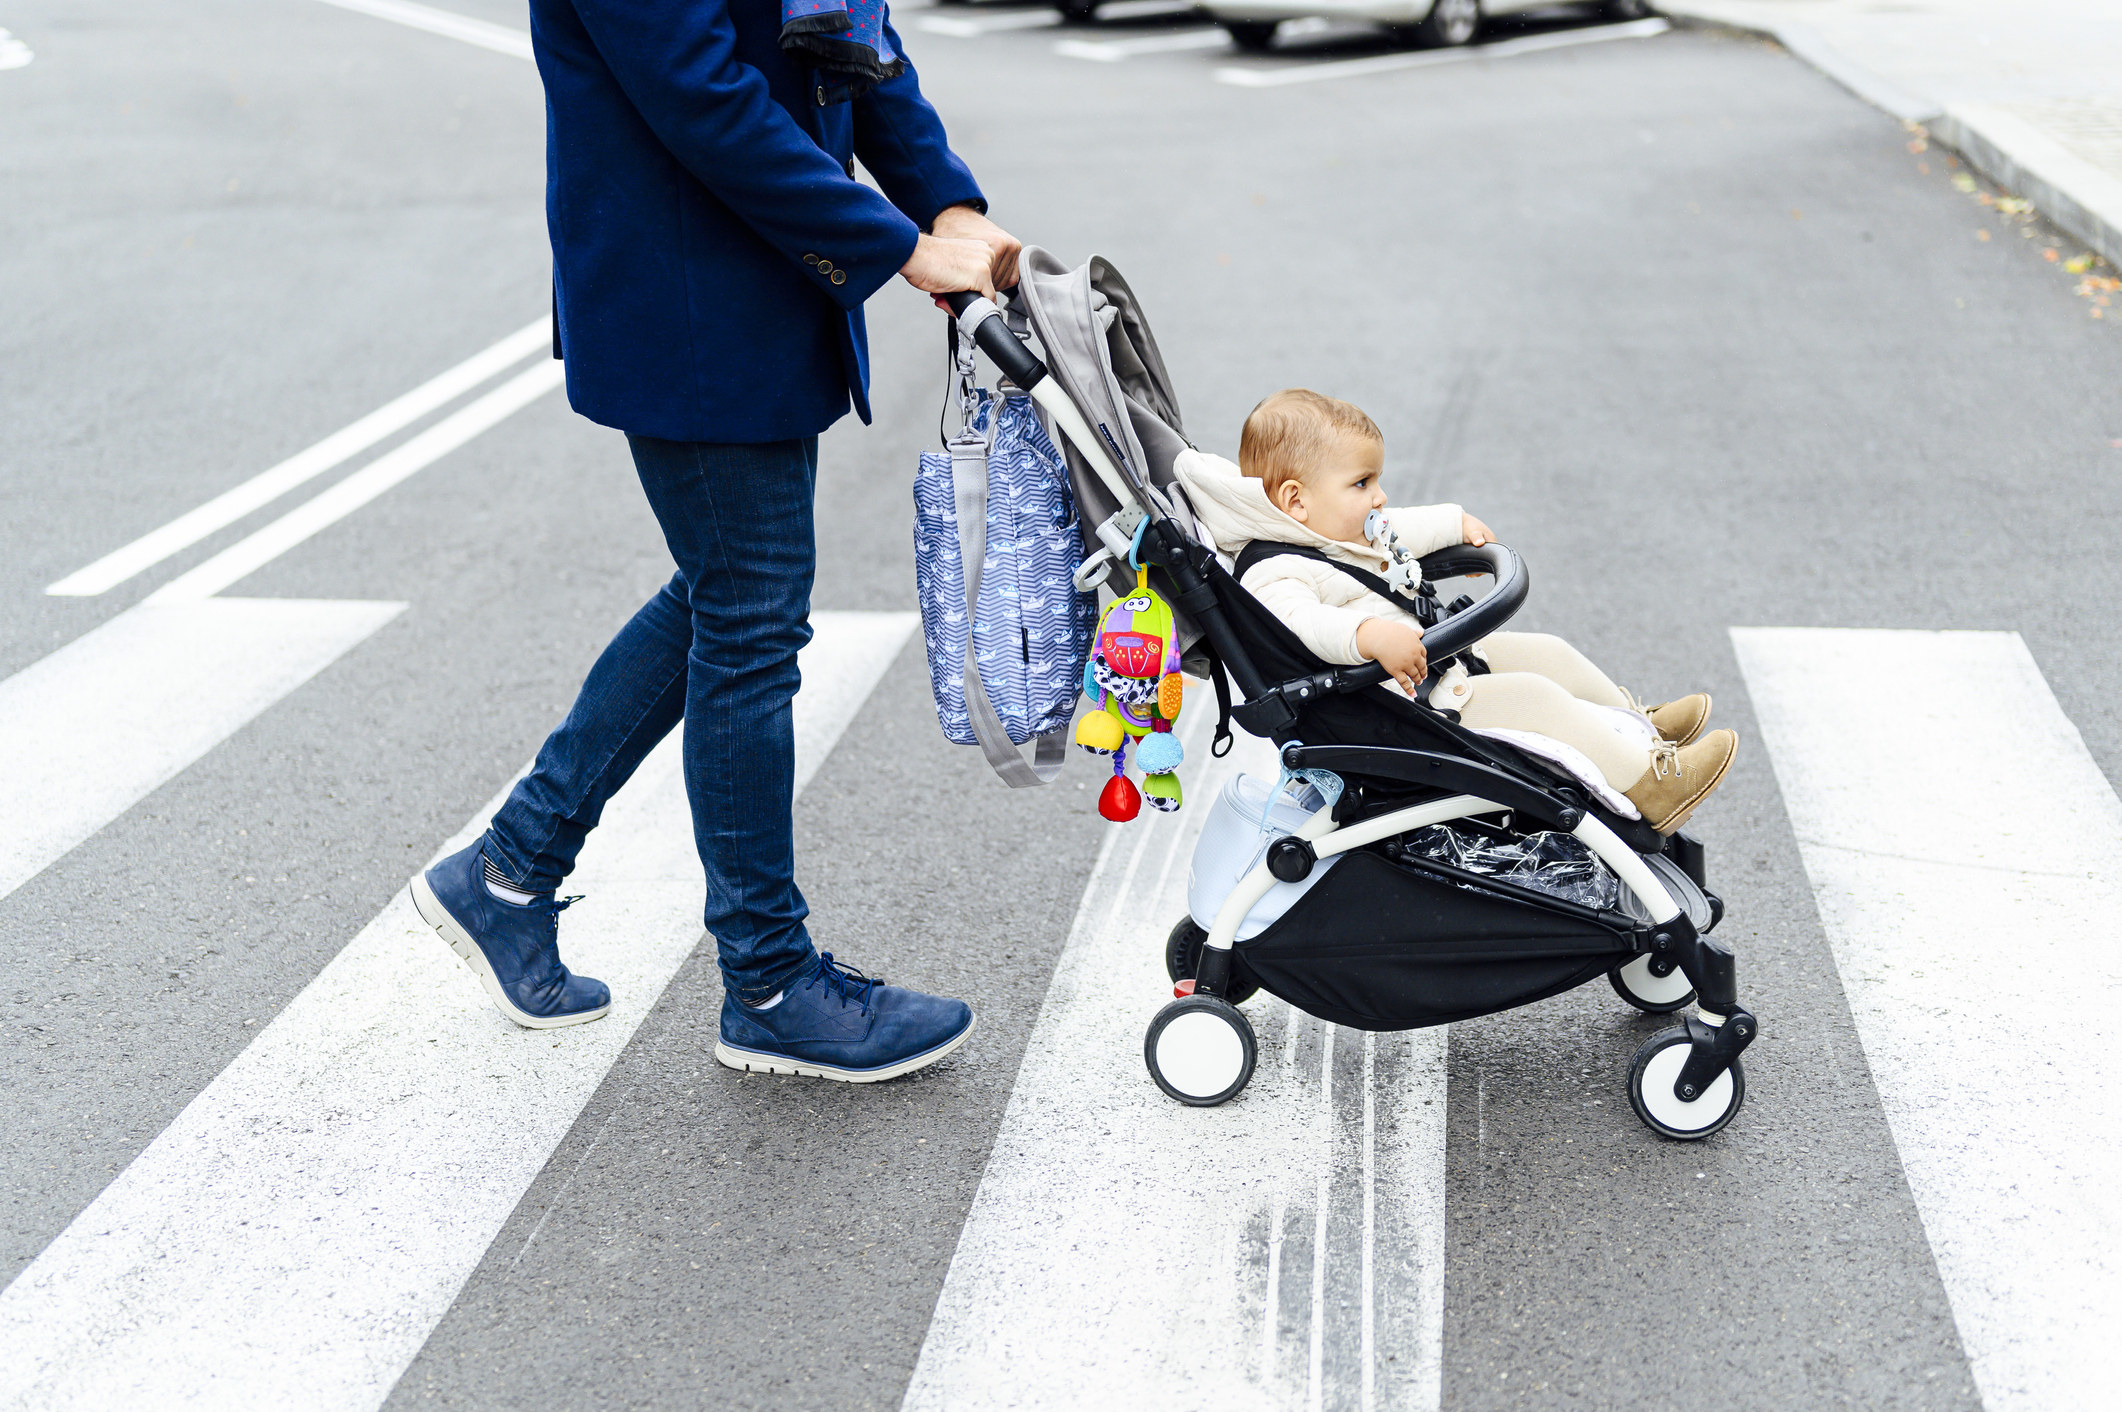 A man walking a baby in a pram across a street